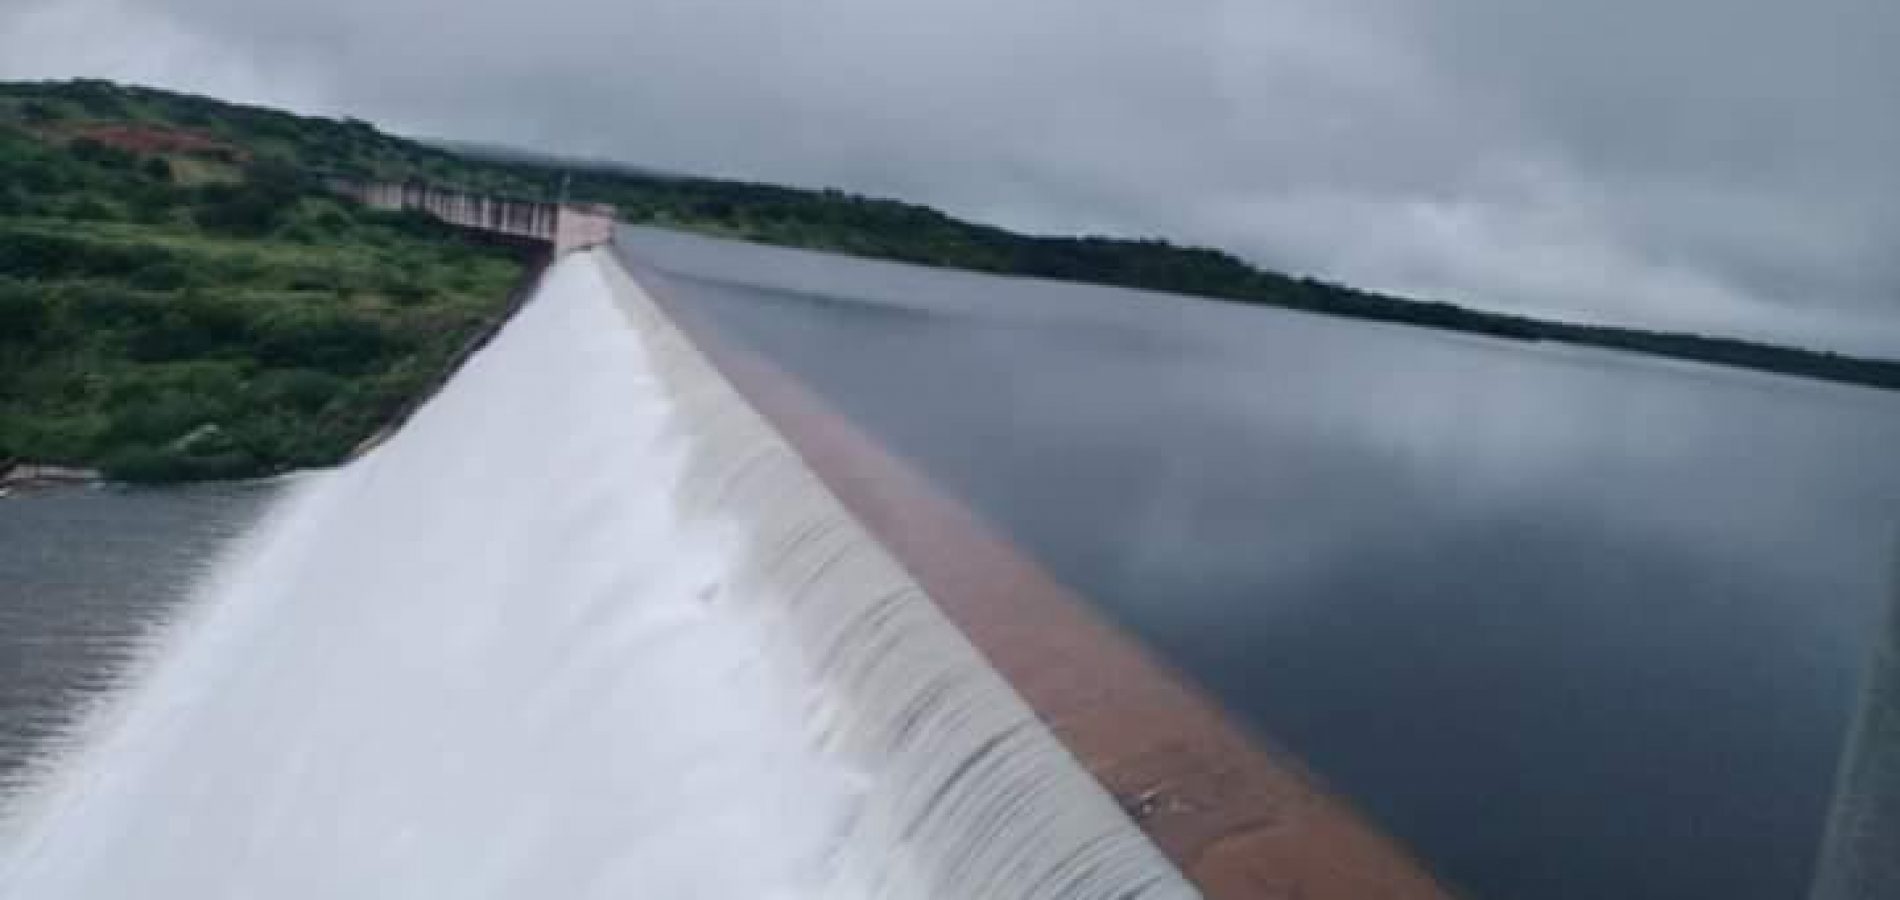 Piauí tem quatro barragens em situação crítica, revela ANA